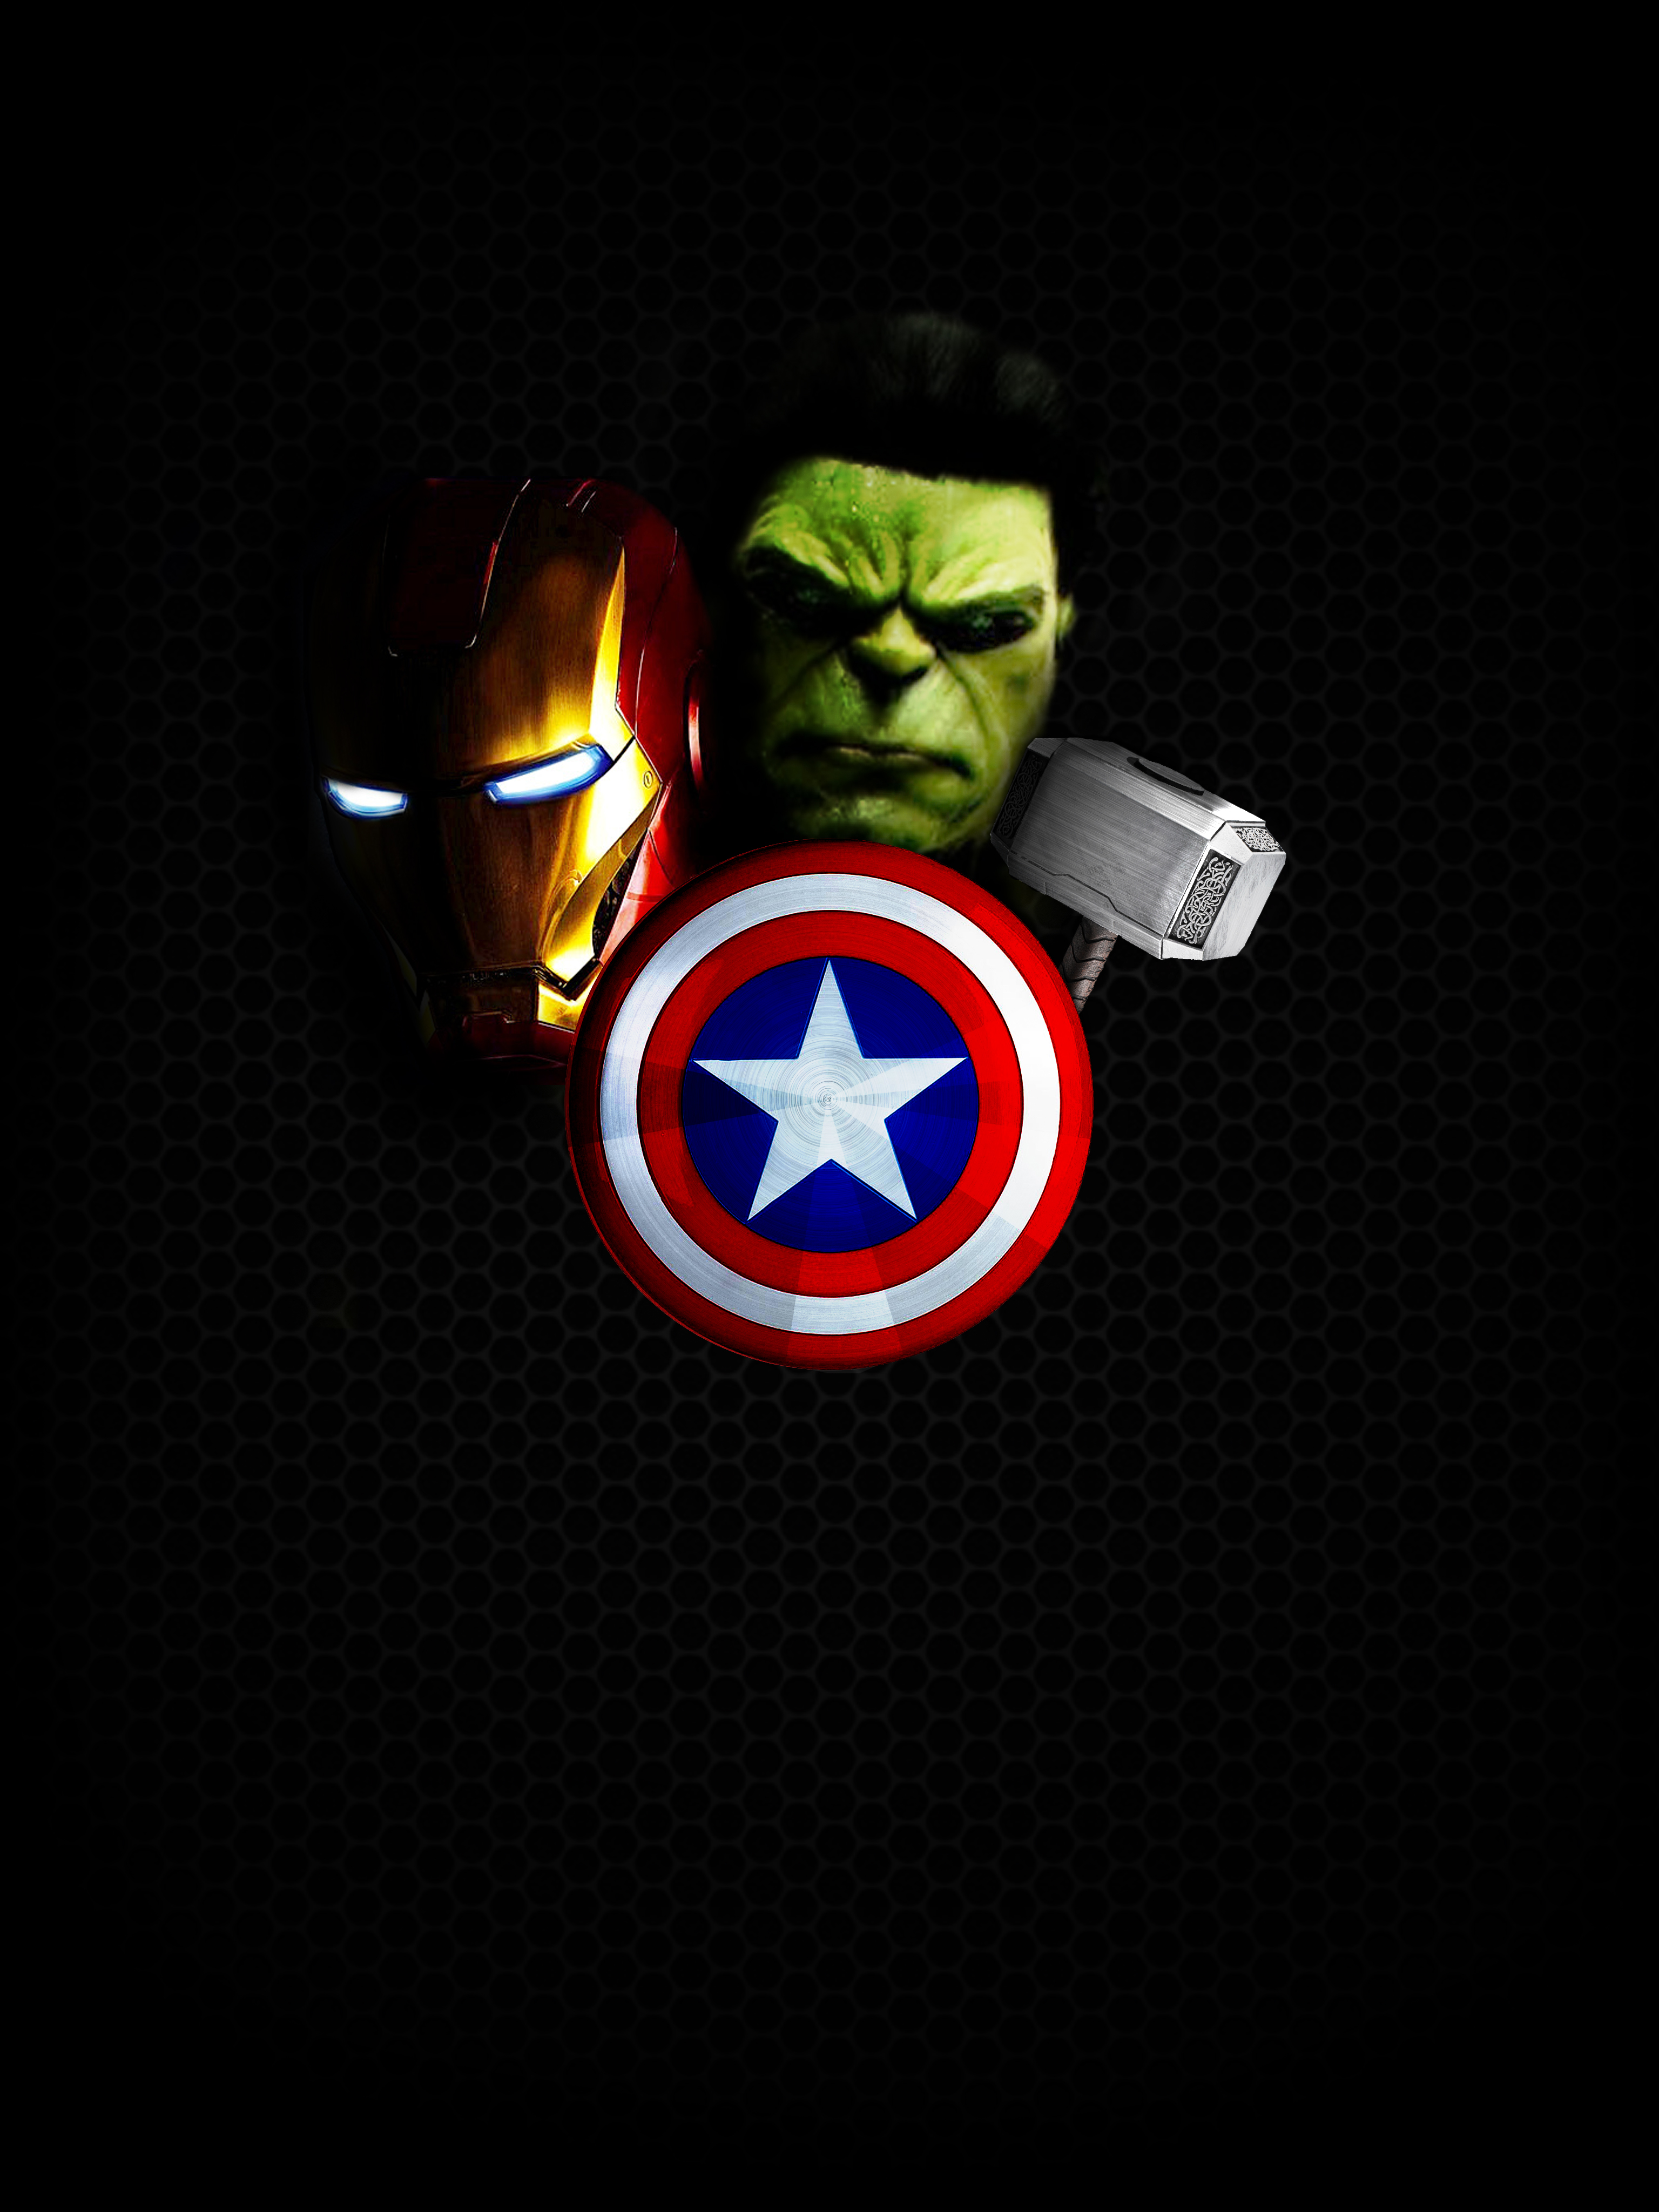 49+] Avengers iPhone Wallpaper - WallpaperSafari